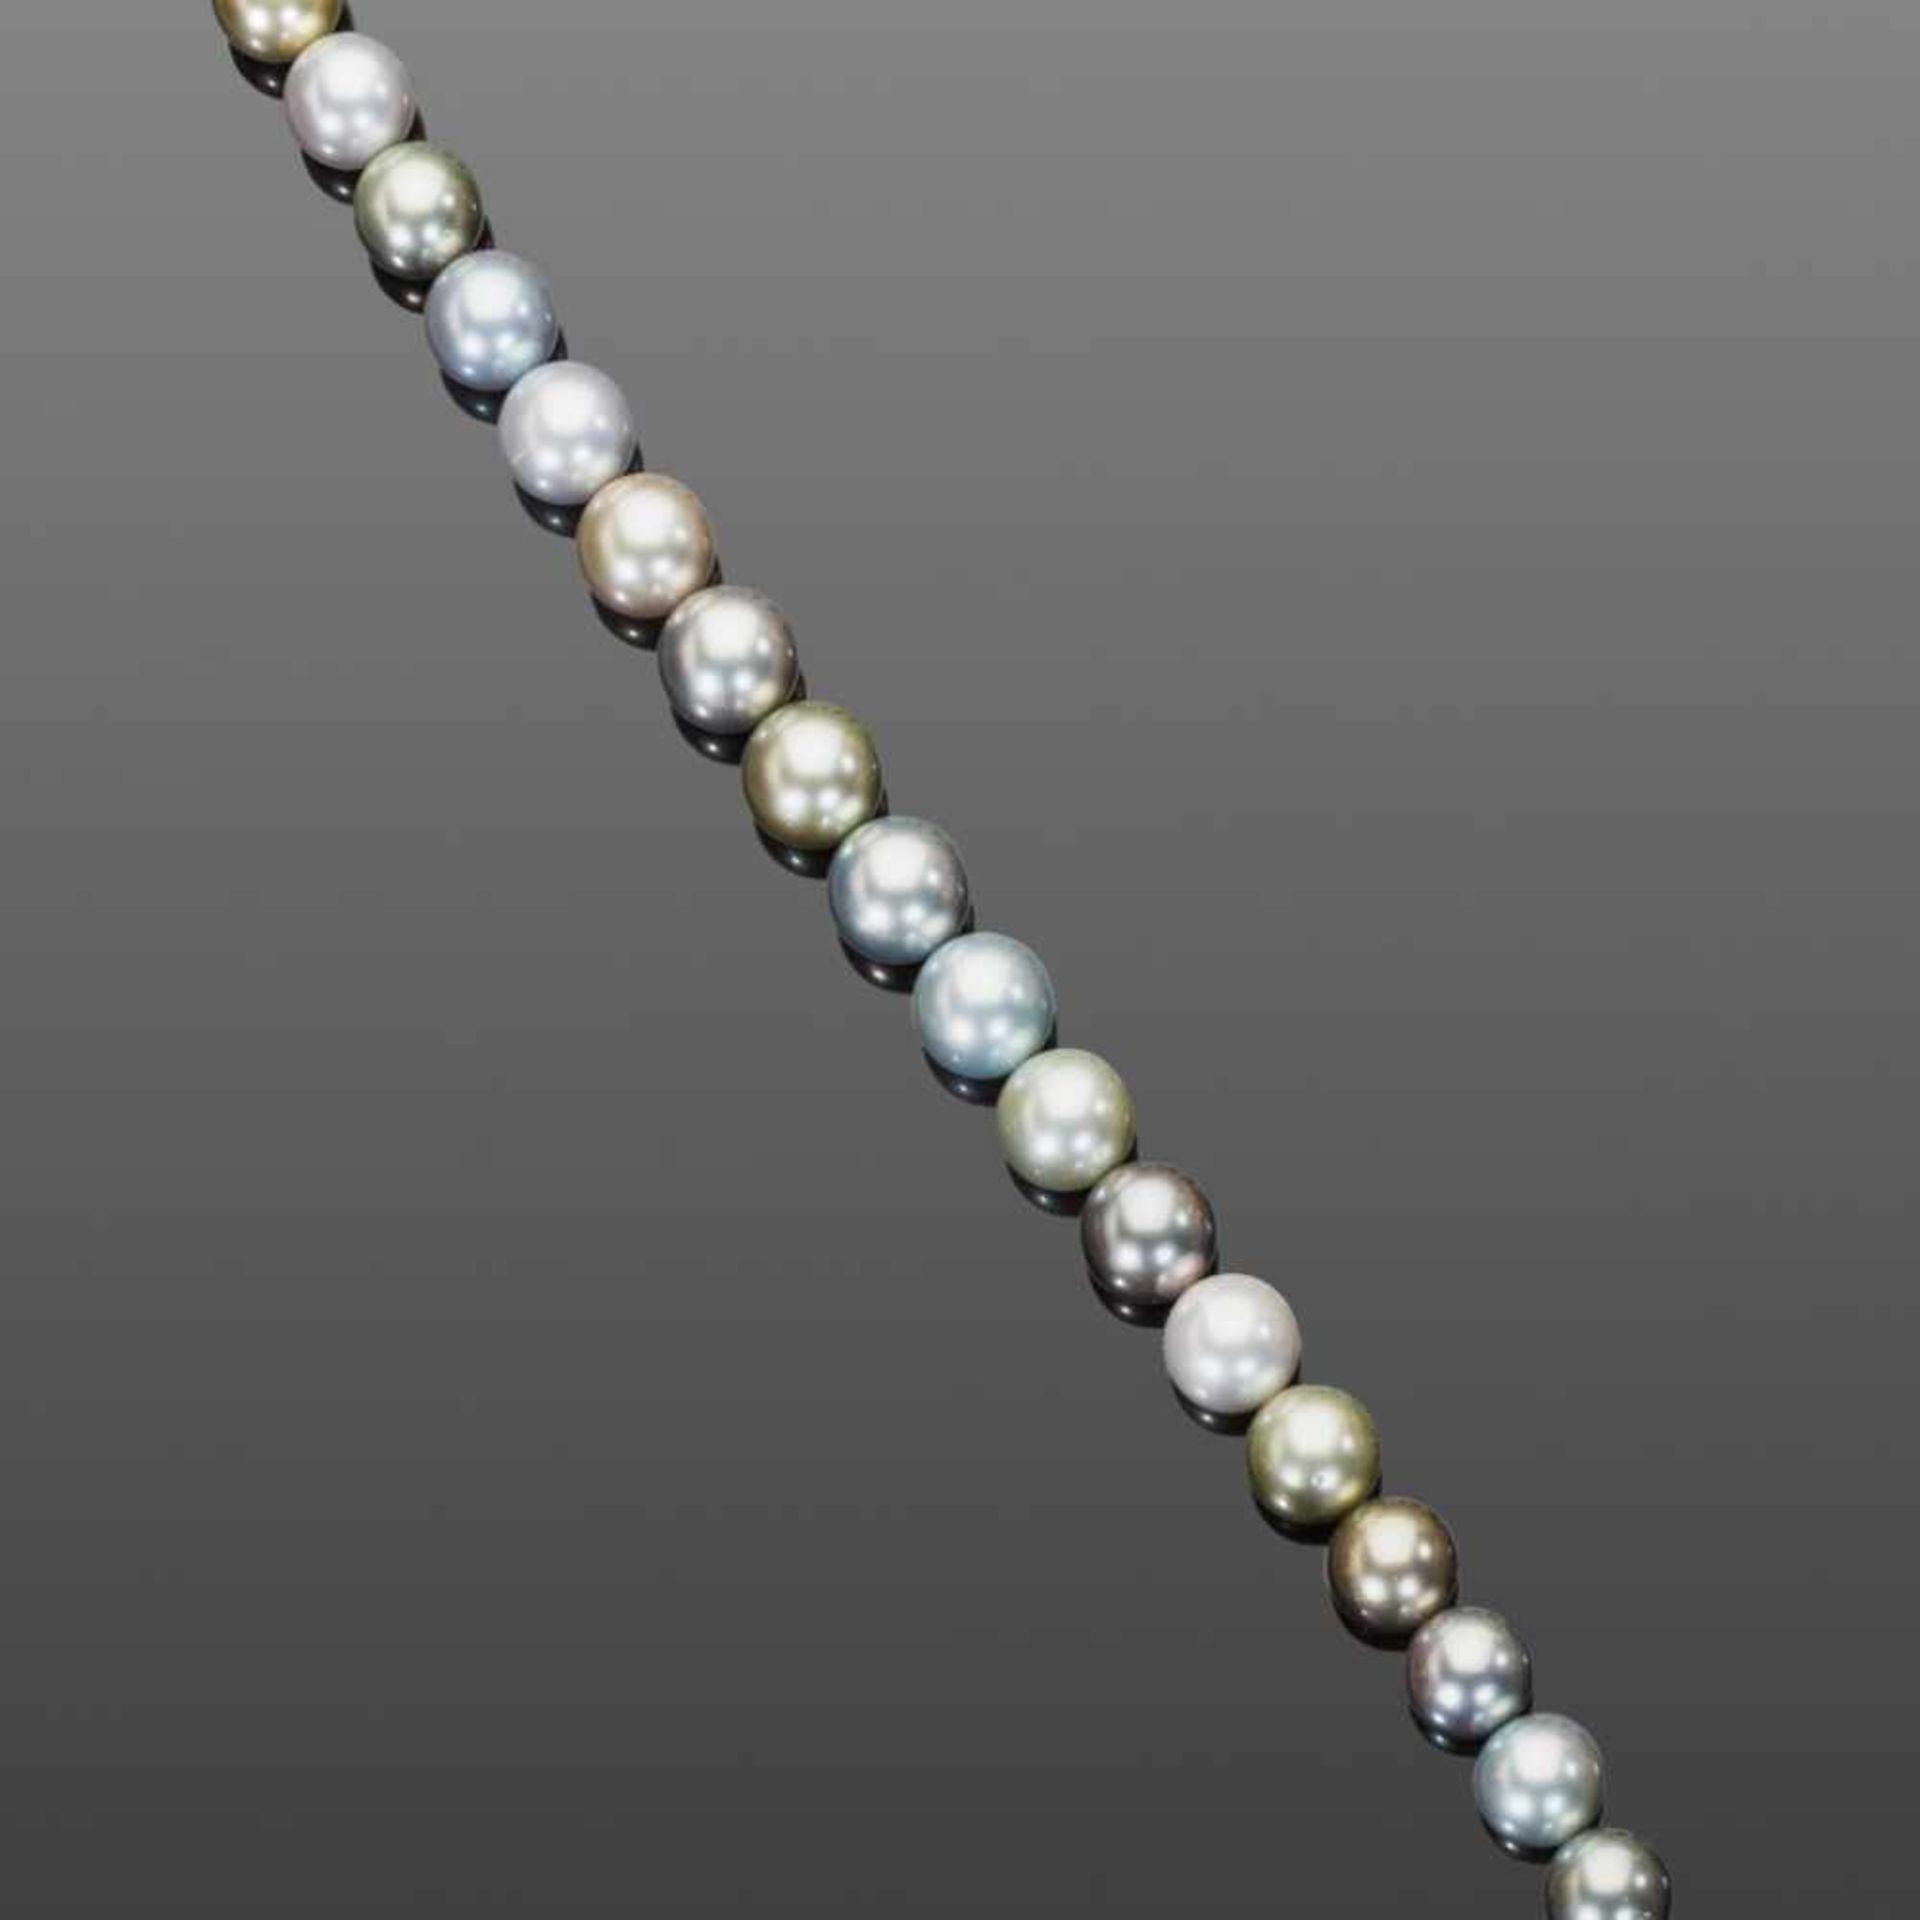 Tahiti-Zuchtperlenstrang. 35 hochfeine Perlen in fein abgestimmten Grau- und Silbertönen. Leichte